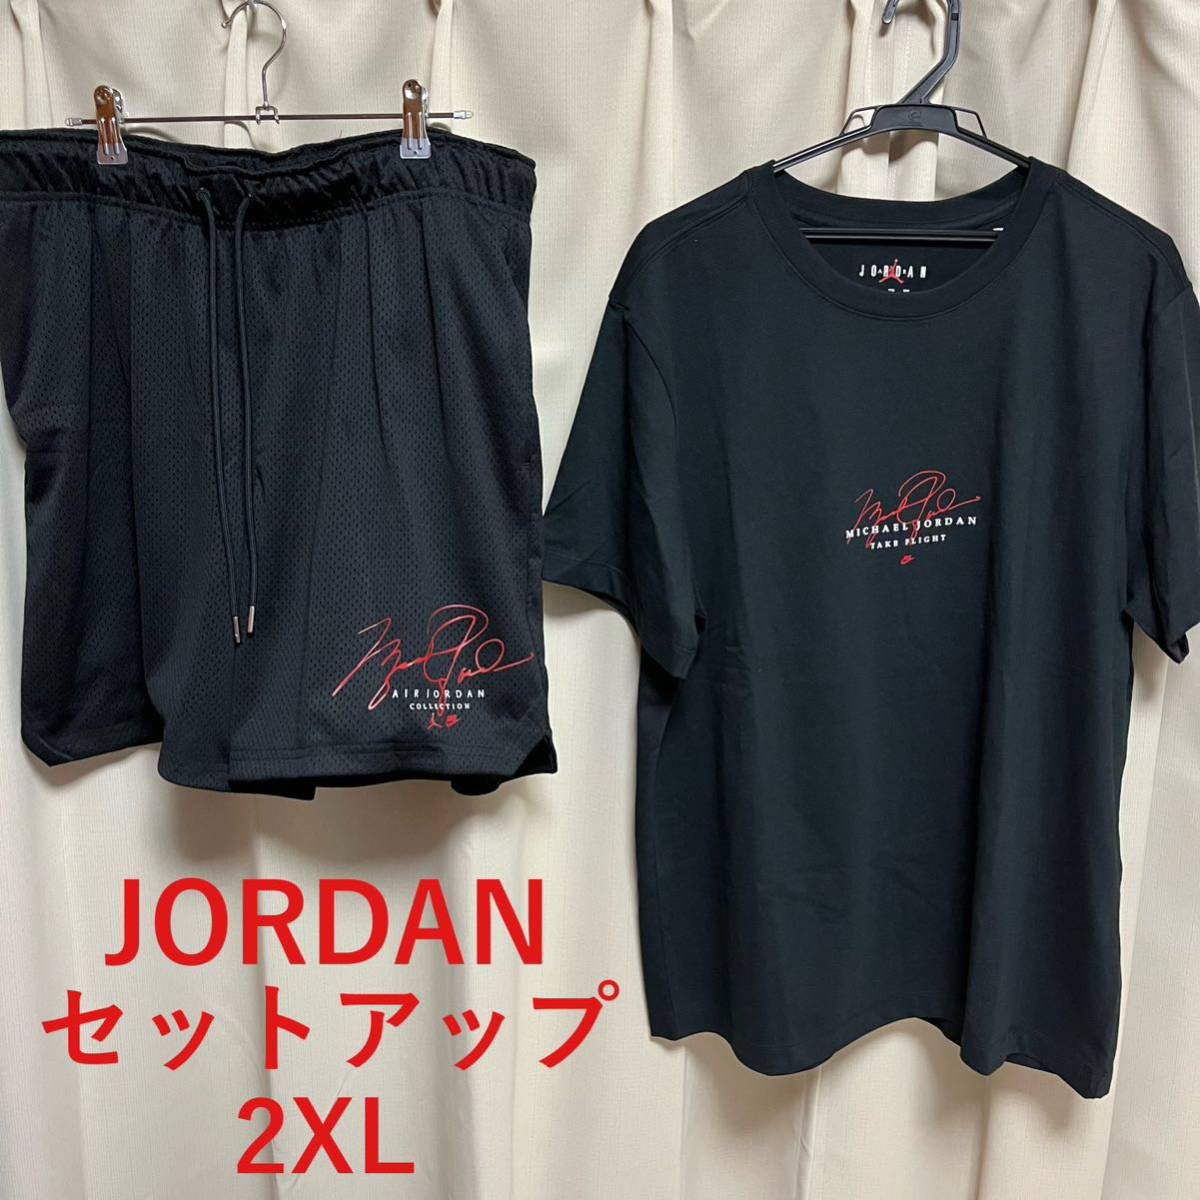 Nike JORDAN セットアップ 2XL 黒 ナイキ ジョーダン ハーフパンツ Tシャツ ショーツ 1 3 4 5 6 11 bbs